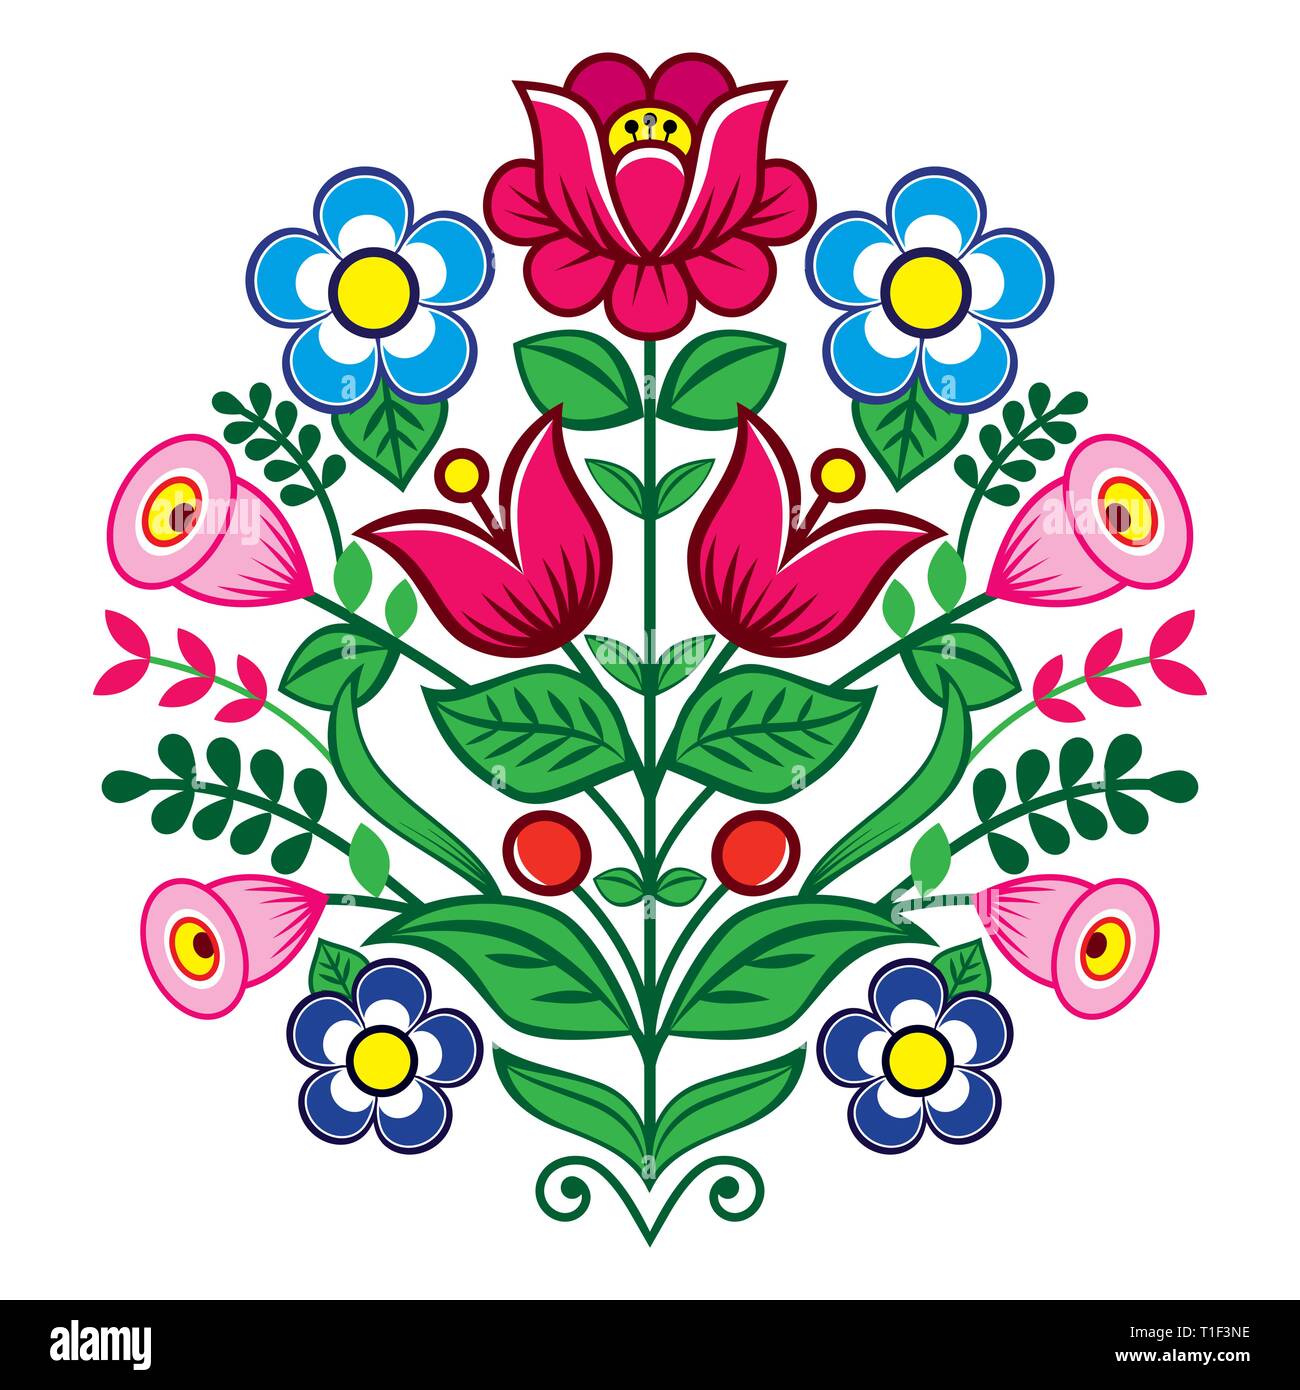 Motif floral vecteur mignon de Pologne, l'art populaire, vecteur conception Zalipie motif décoratif avec des roses et des feuilles - carte de voeux, d'invitation de mariage Illustration de Vecteur